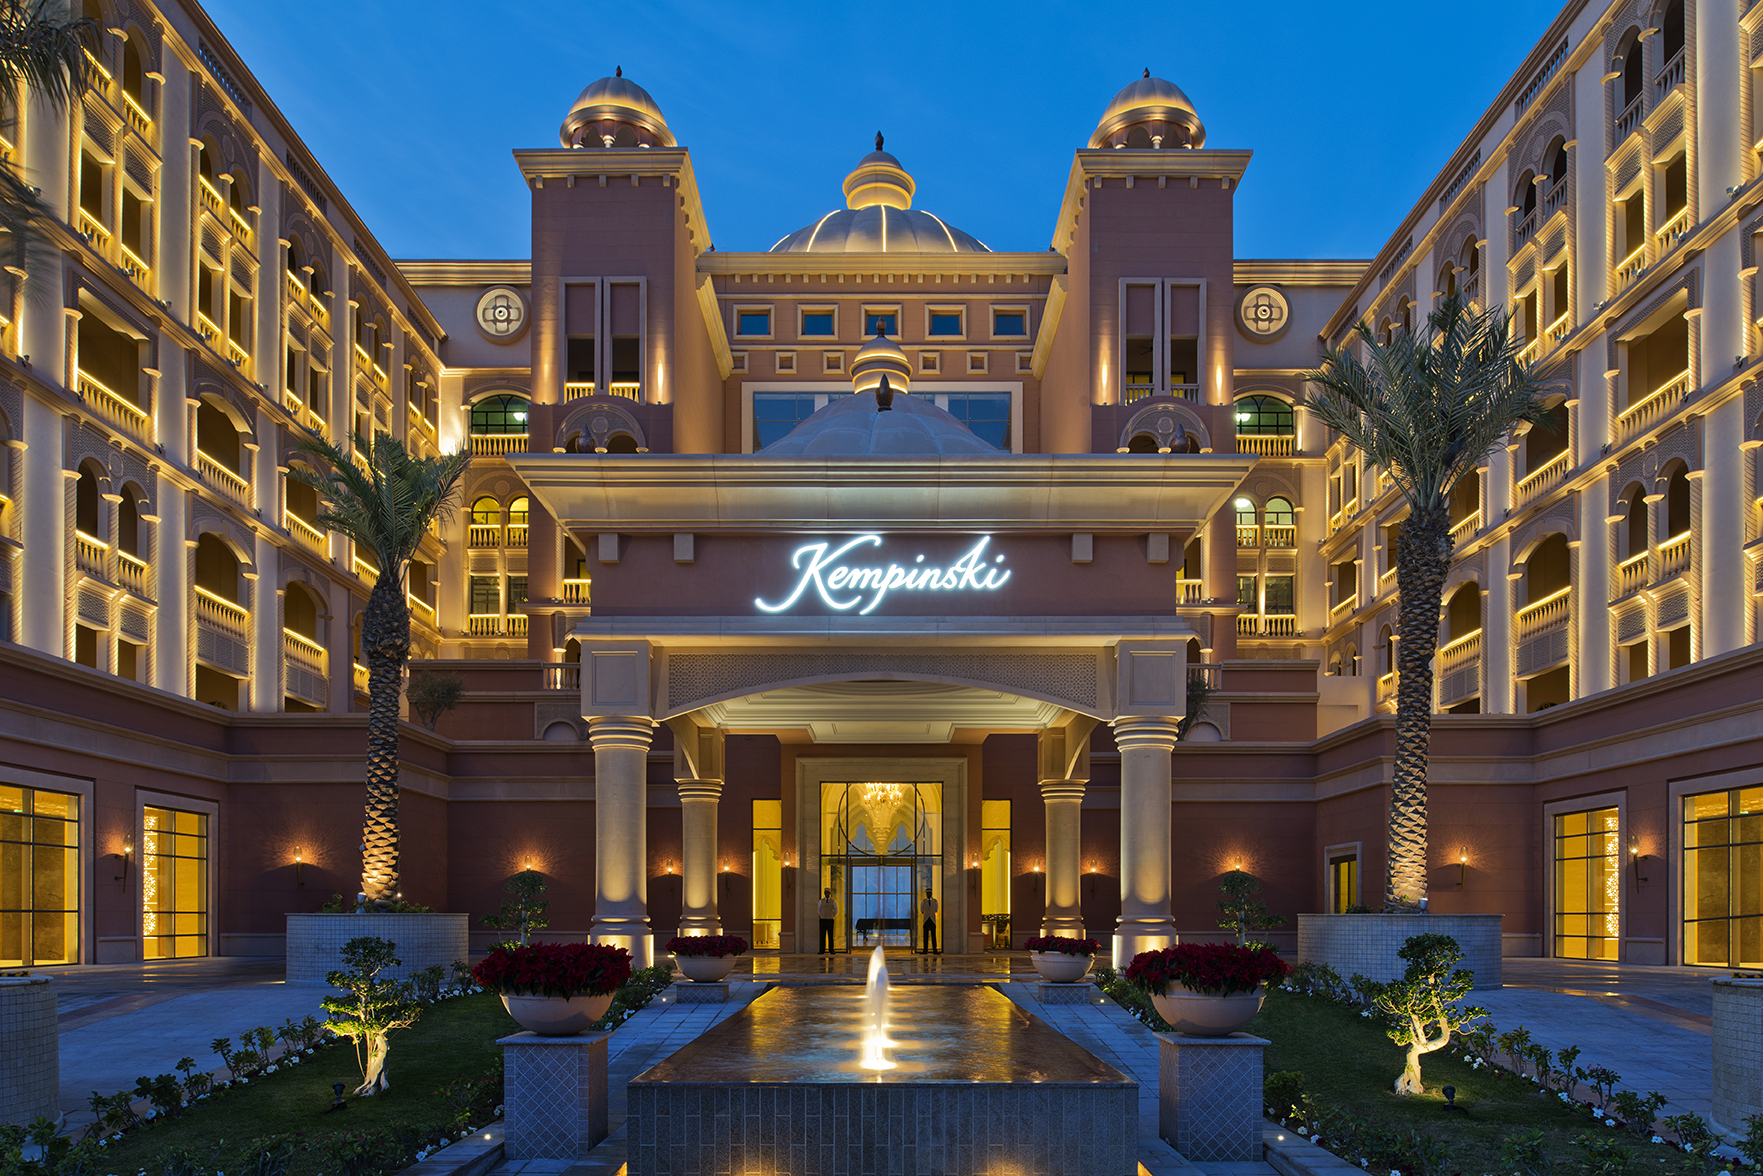 MARSA MALAZ KEMPINSKI HOTEL – THE PEARL, QATAR